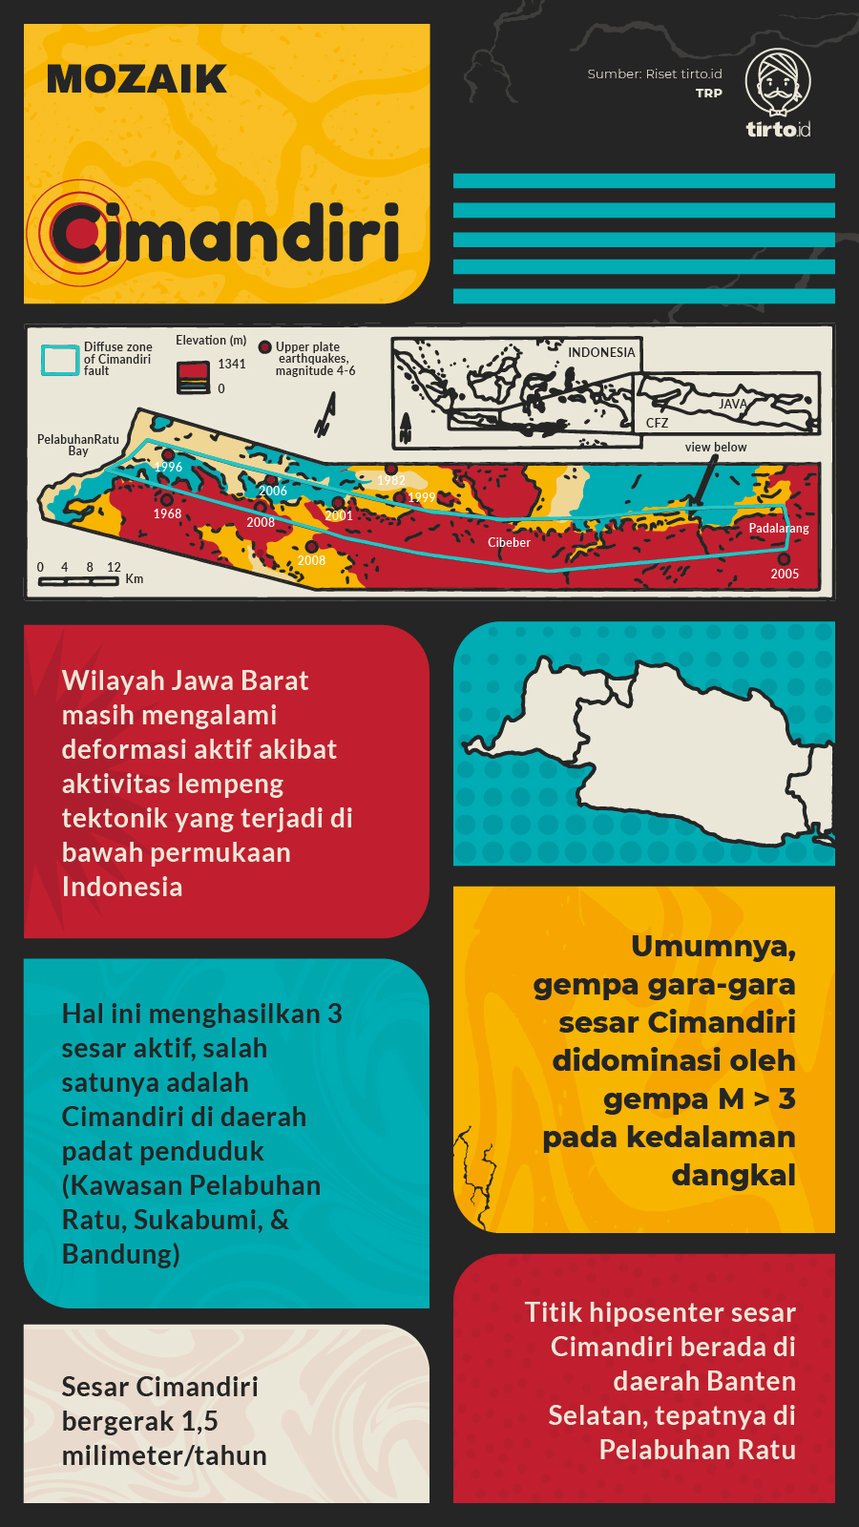 Infografik Mozaik Cimandiri